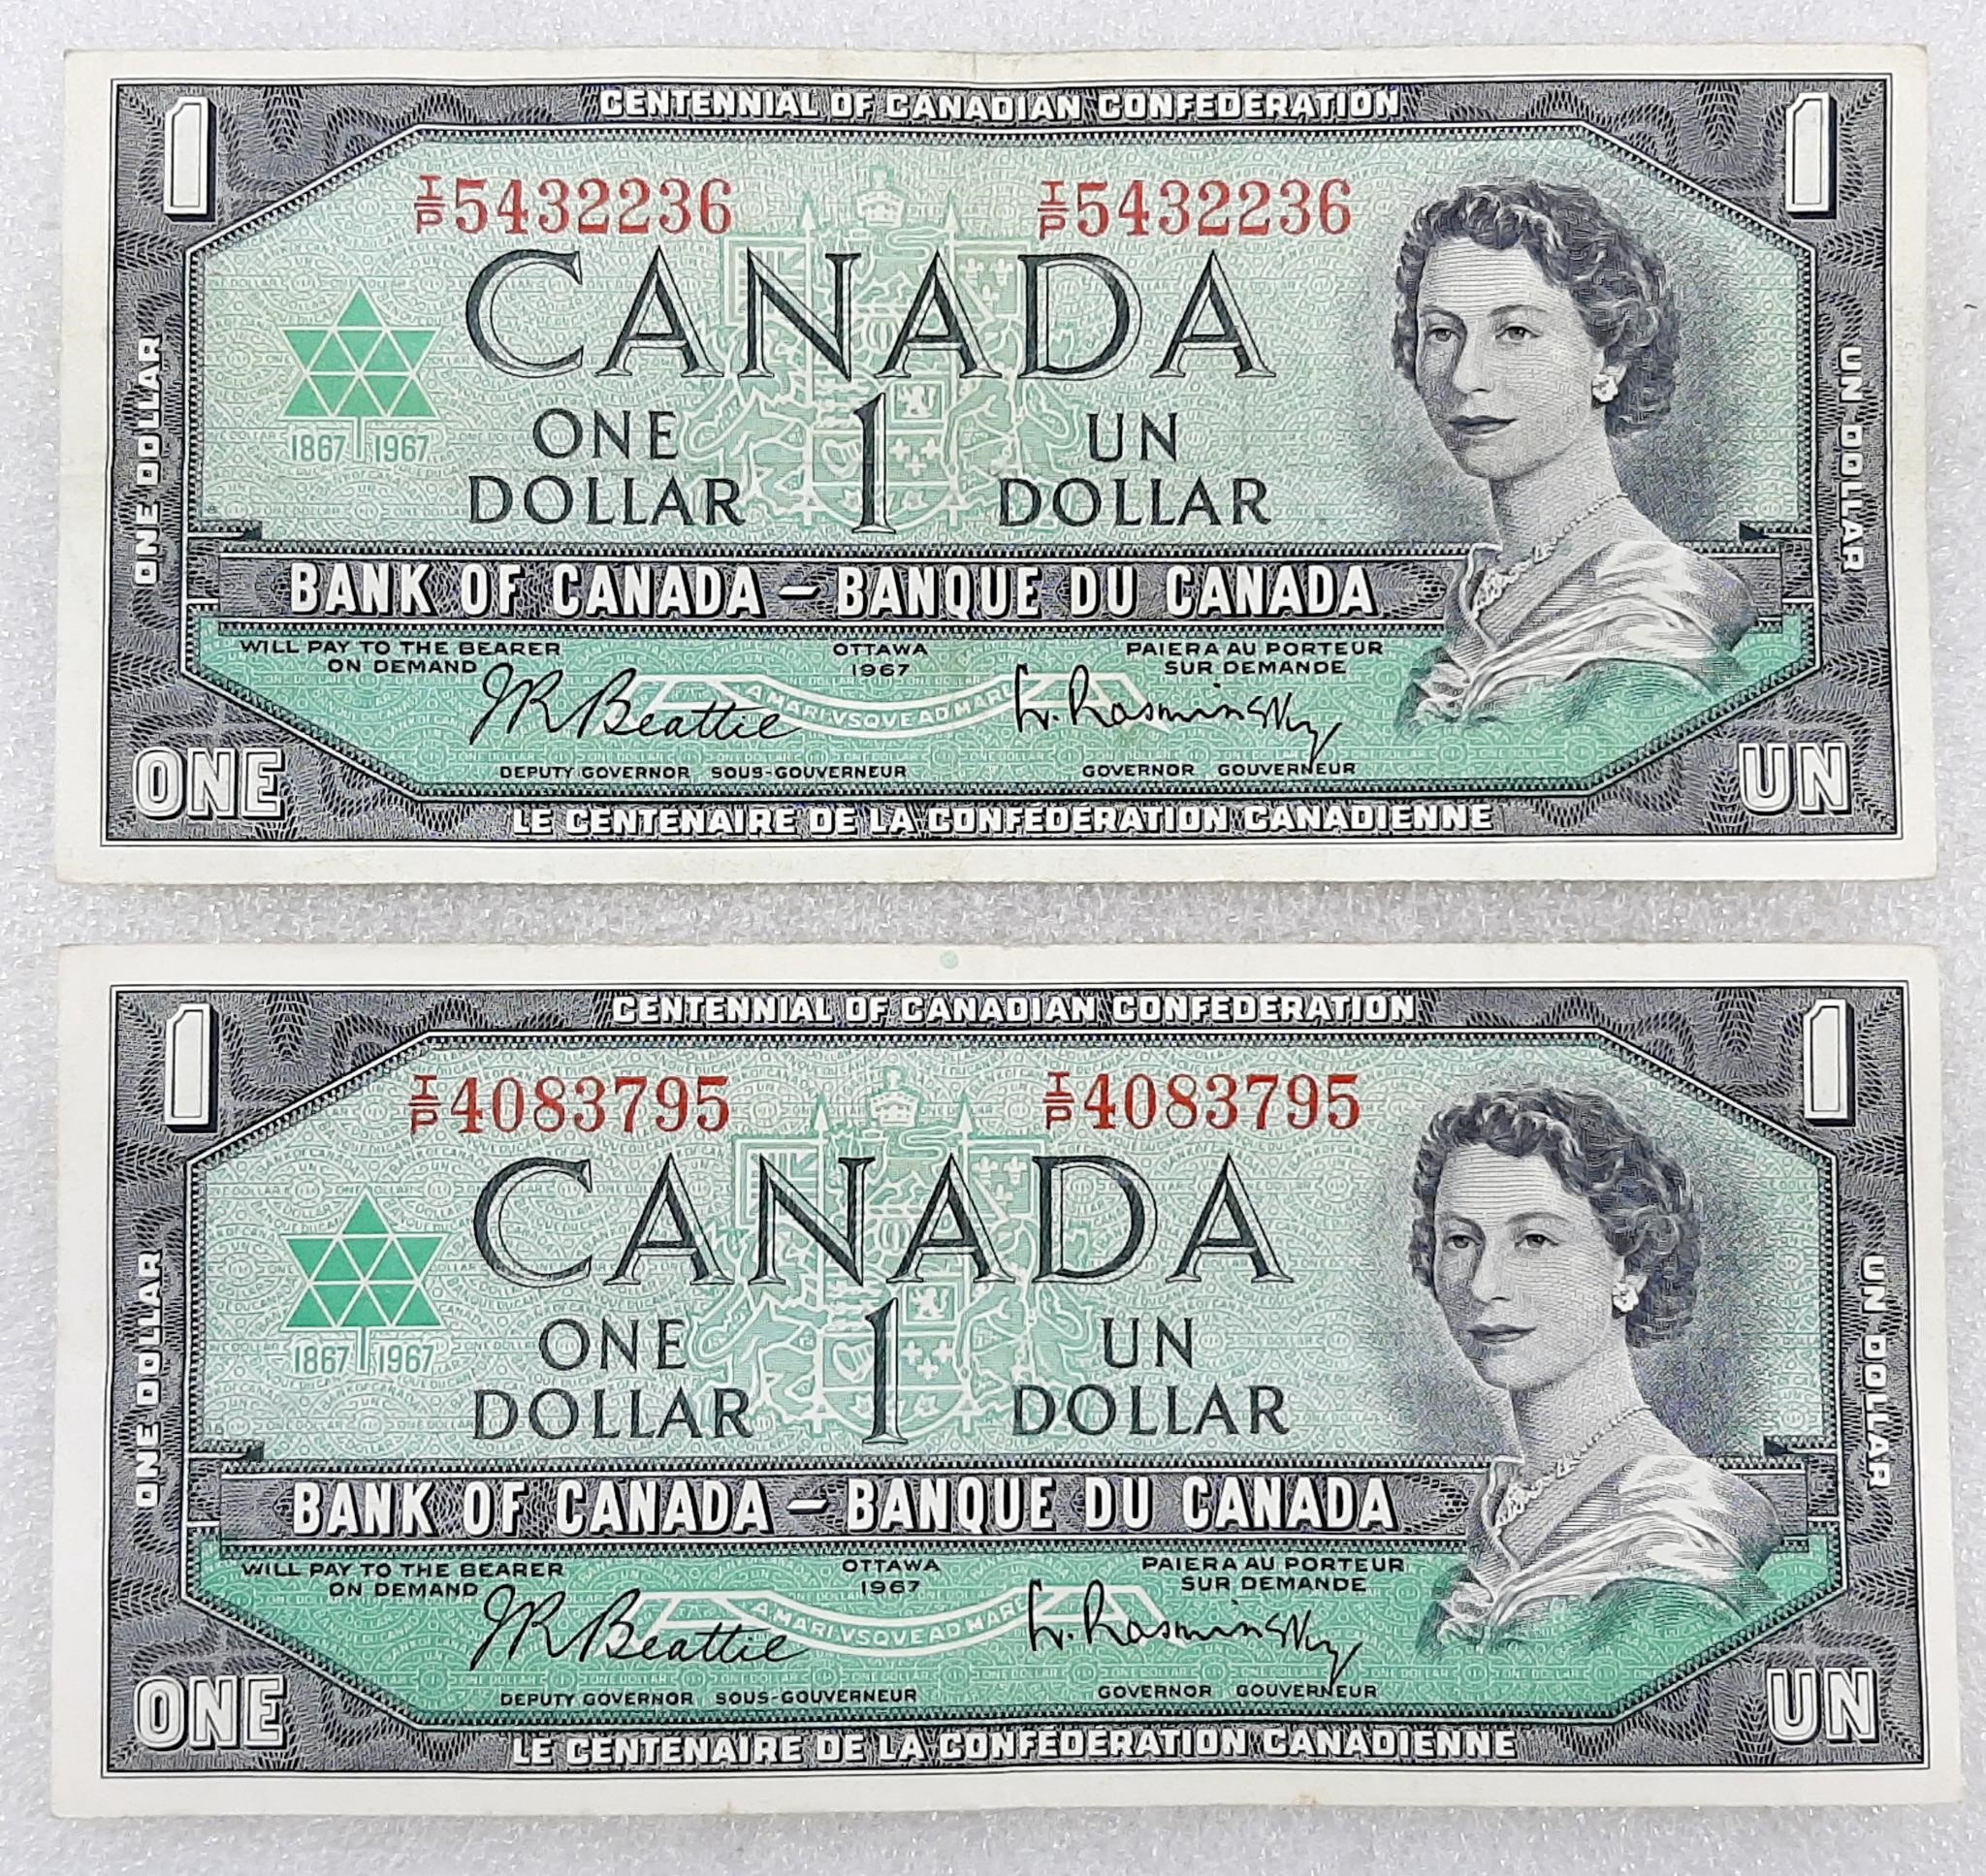 2x Billet de 1$ CANADA 1967 avec # de série